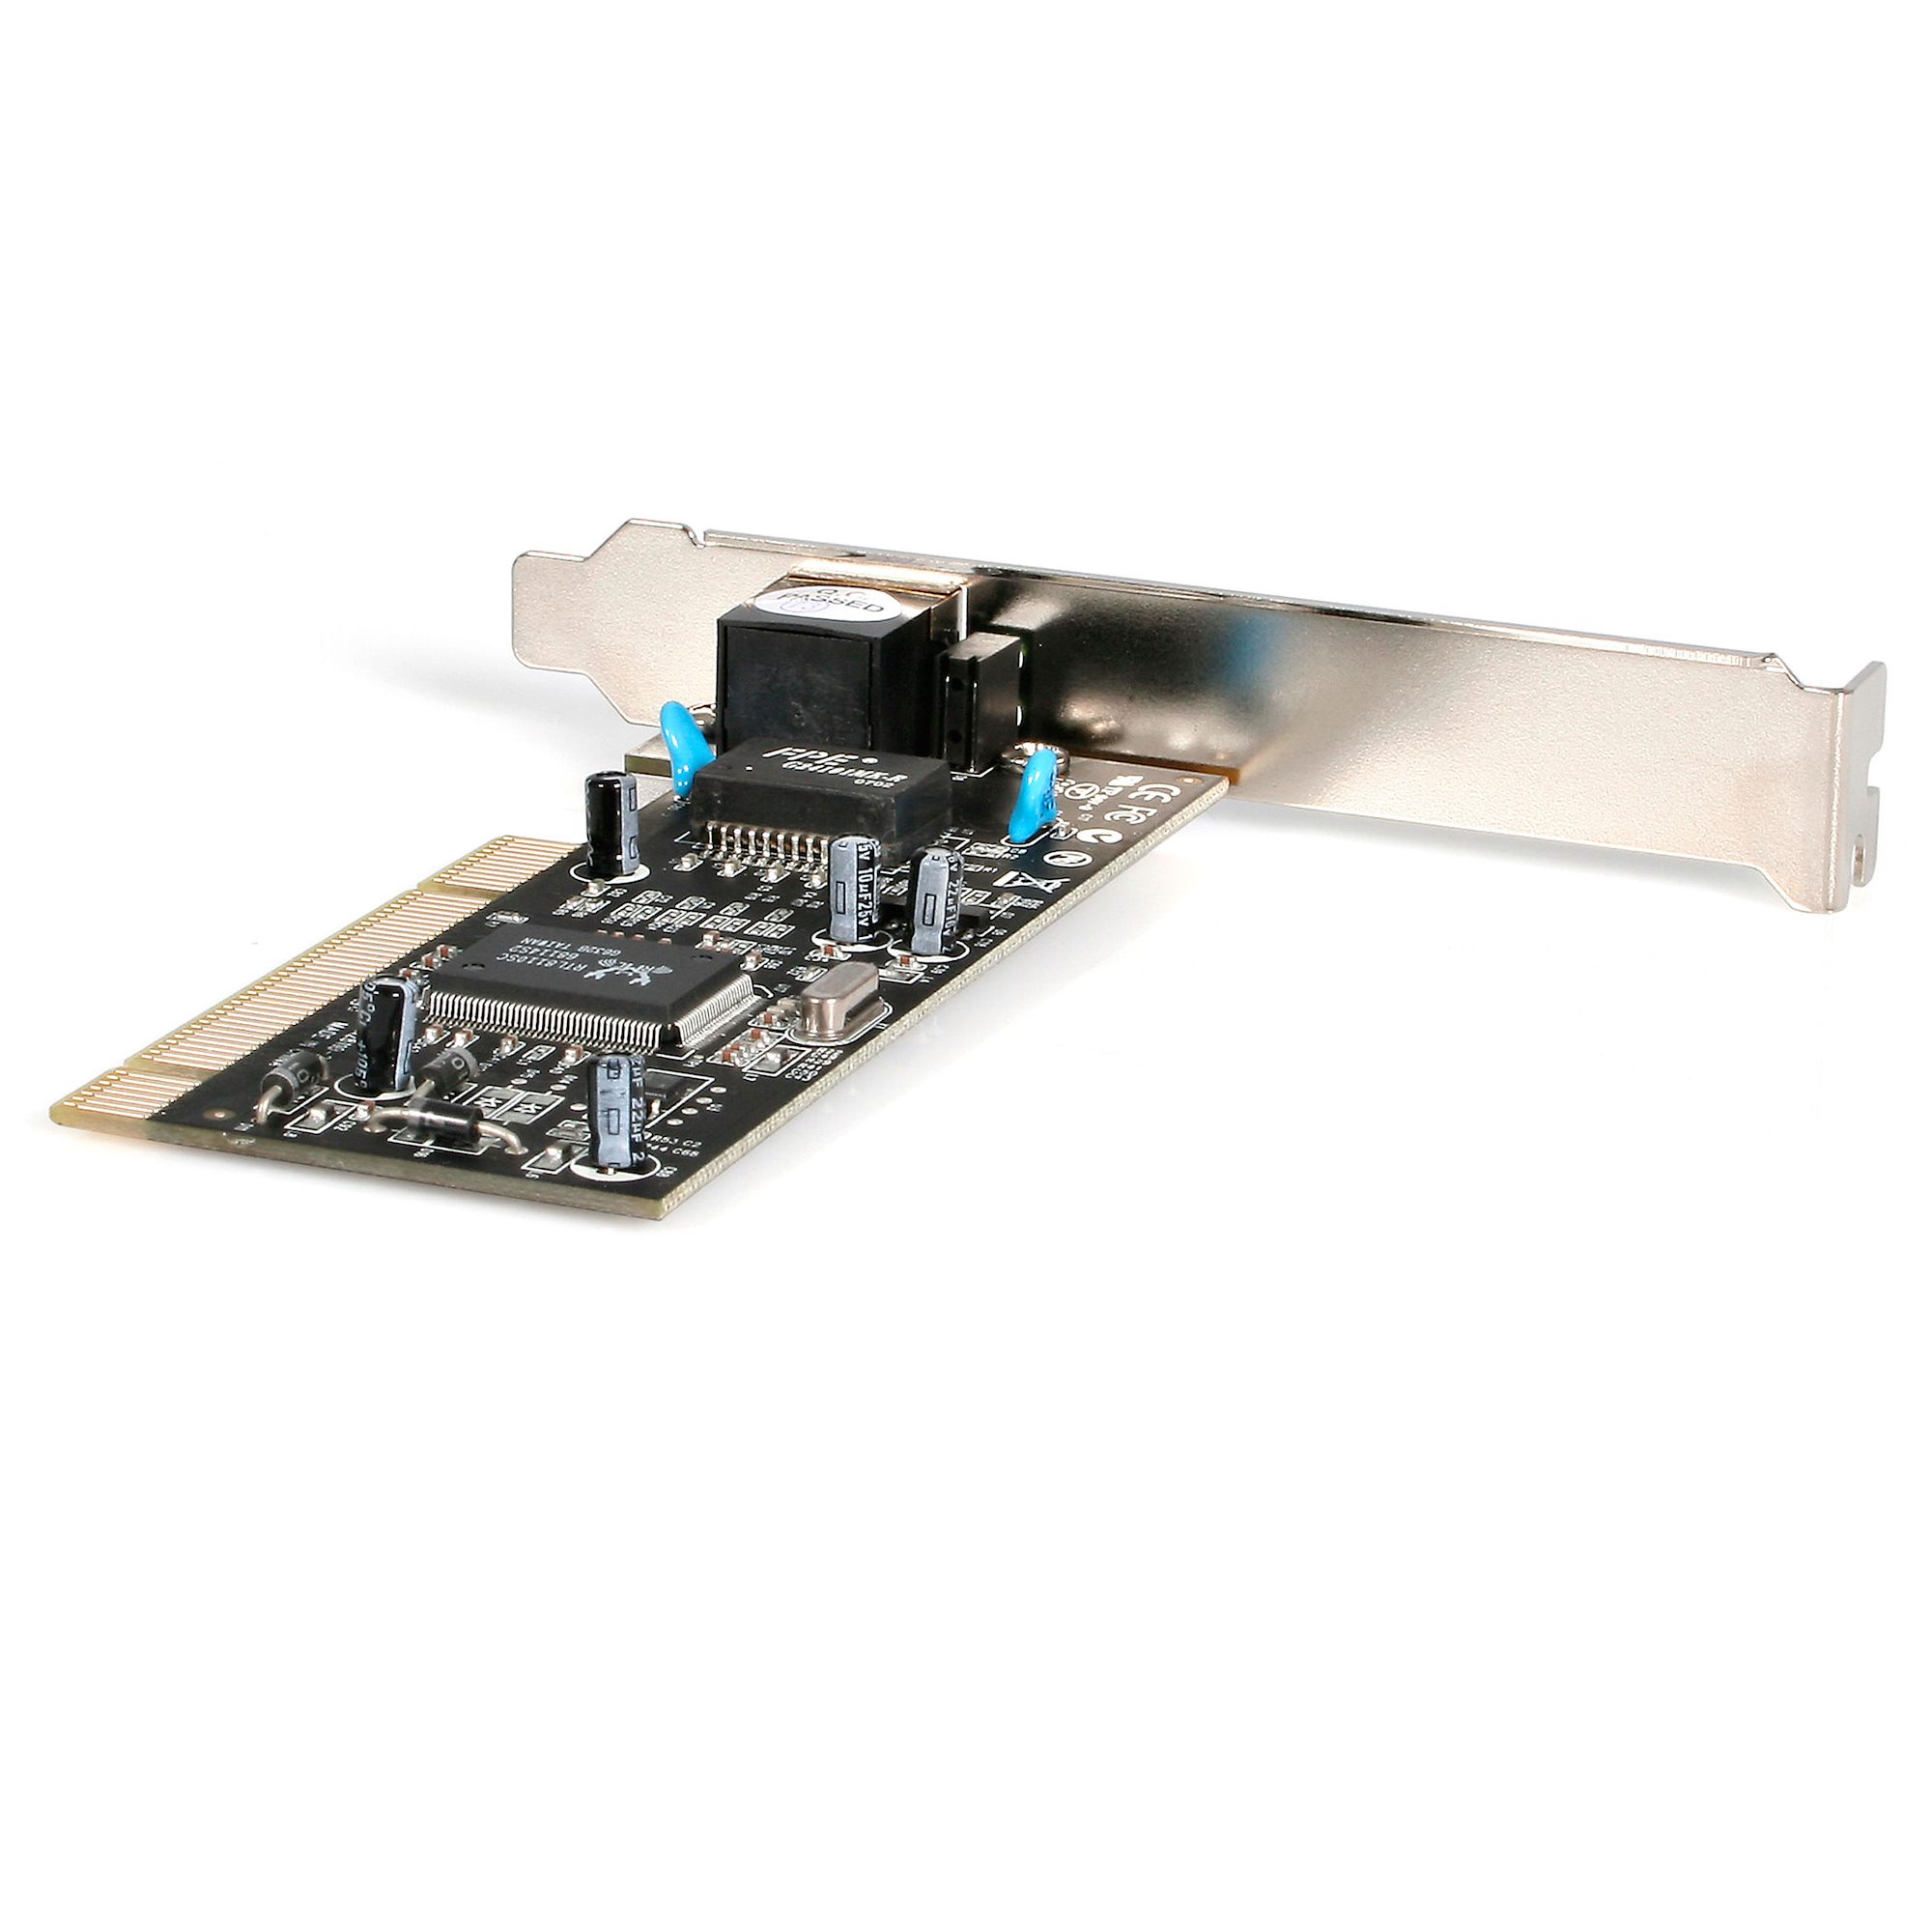 Intel I210 NIC STARTECH.COM Scheda di Rete Ethernet PCI Express ad 1 Porta Adattatore PCIe NIC Gigabit Ethernet